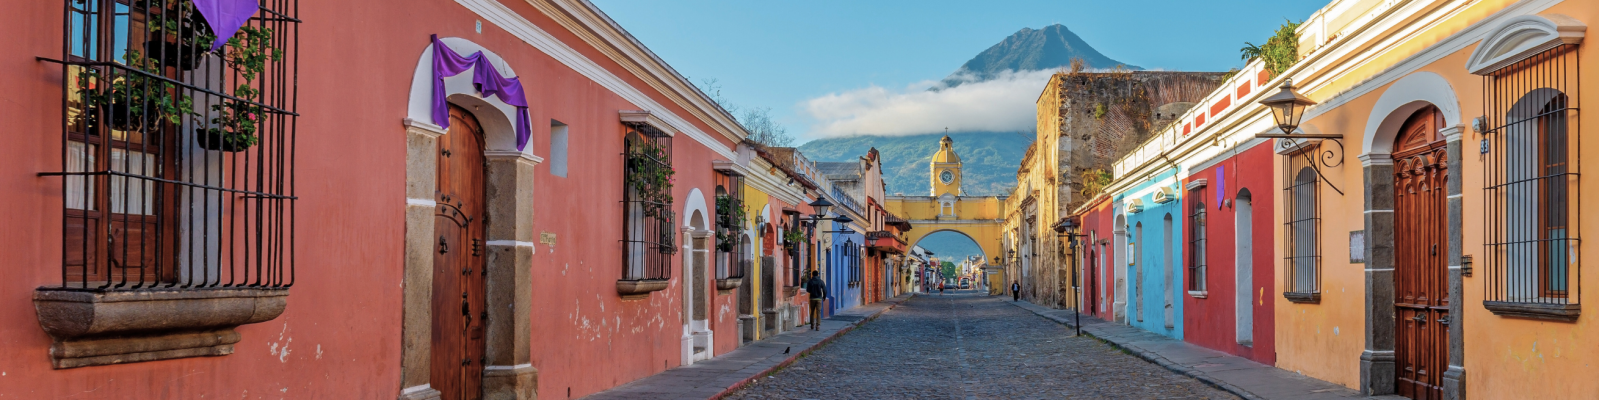 Voyage Guatemala solidaire, responsable pour un tourisme durable au Guatemala